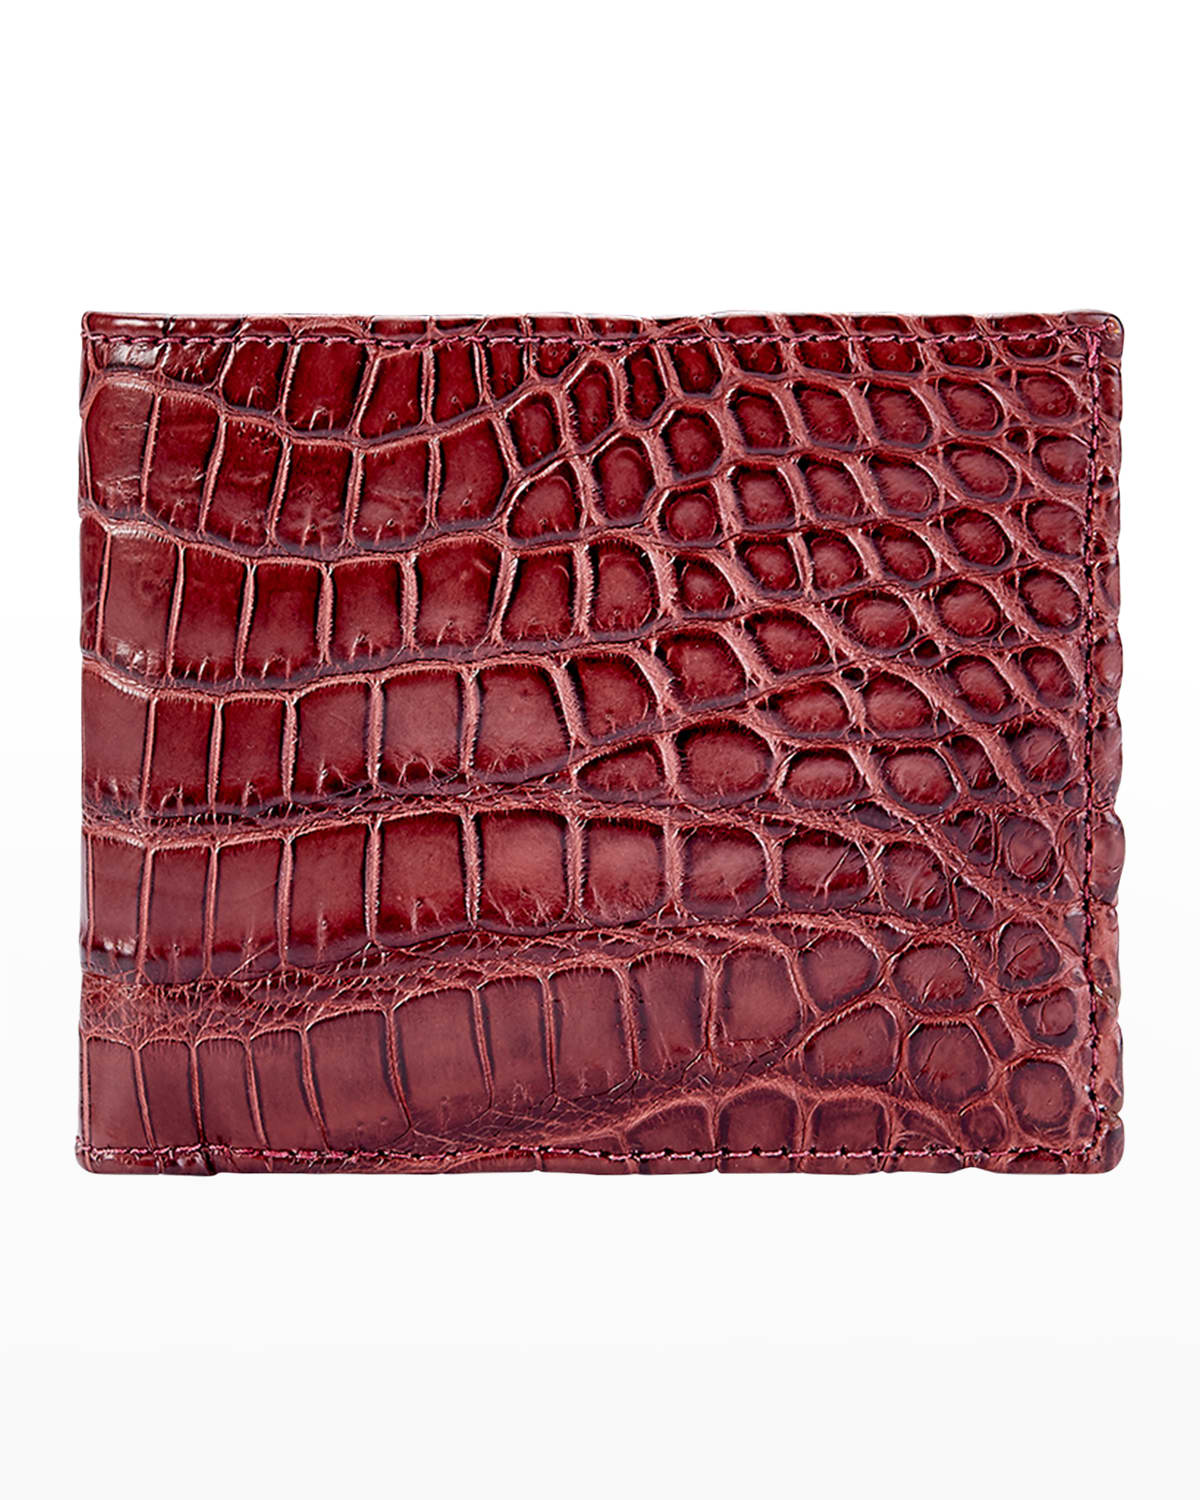 Neiman Marcus Men's Alligator Leather Wallet In Burgundy